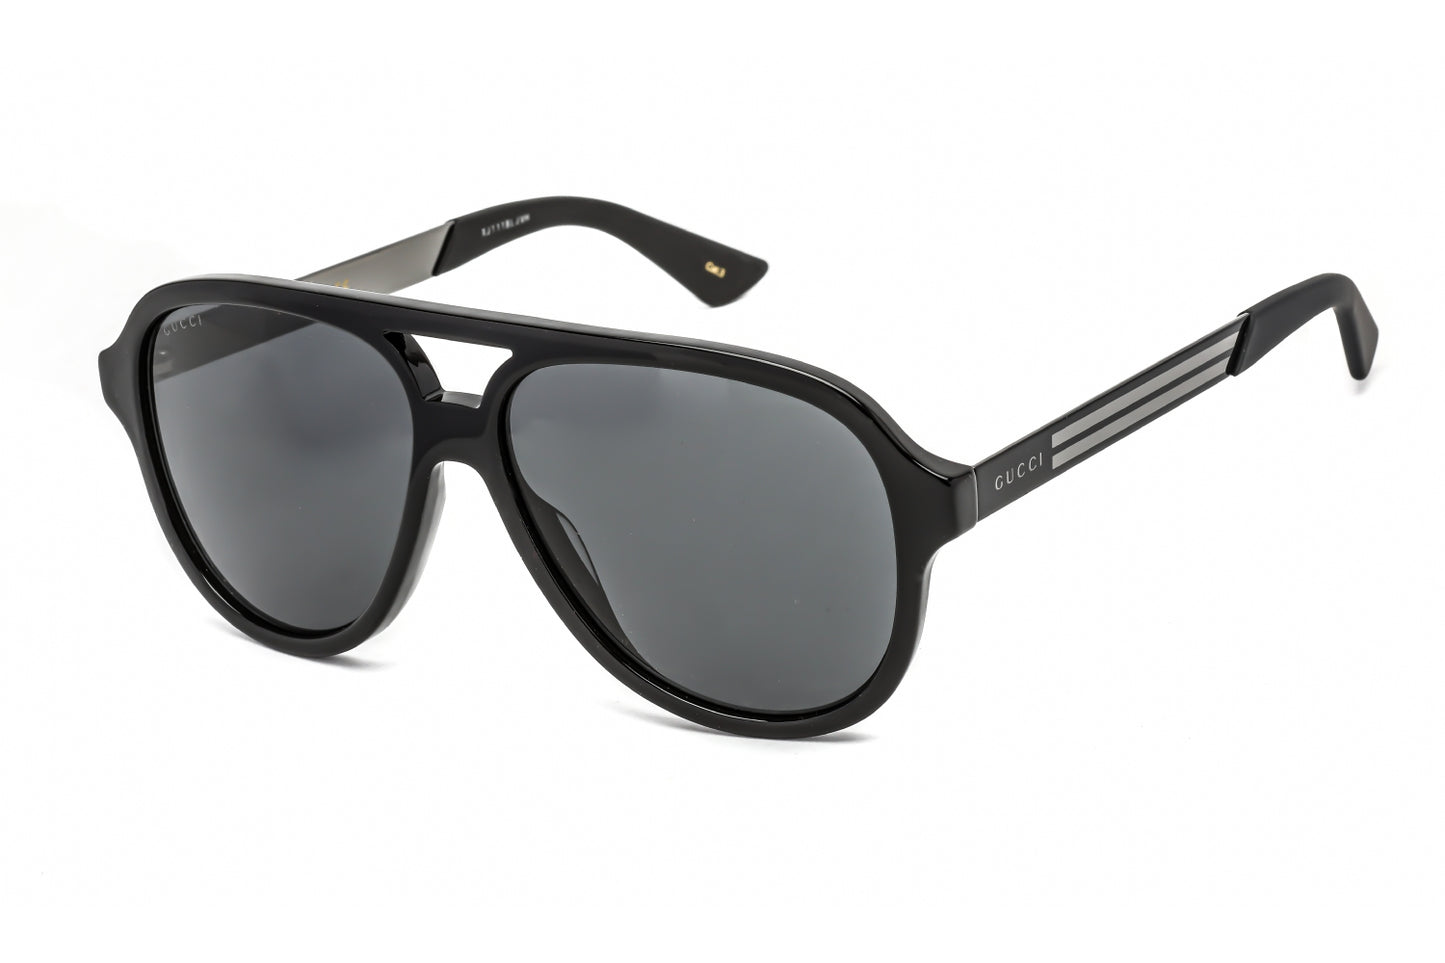 Gucci GG0688S-001 59mm New Sunglasses